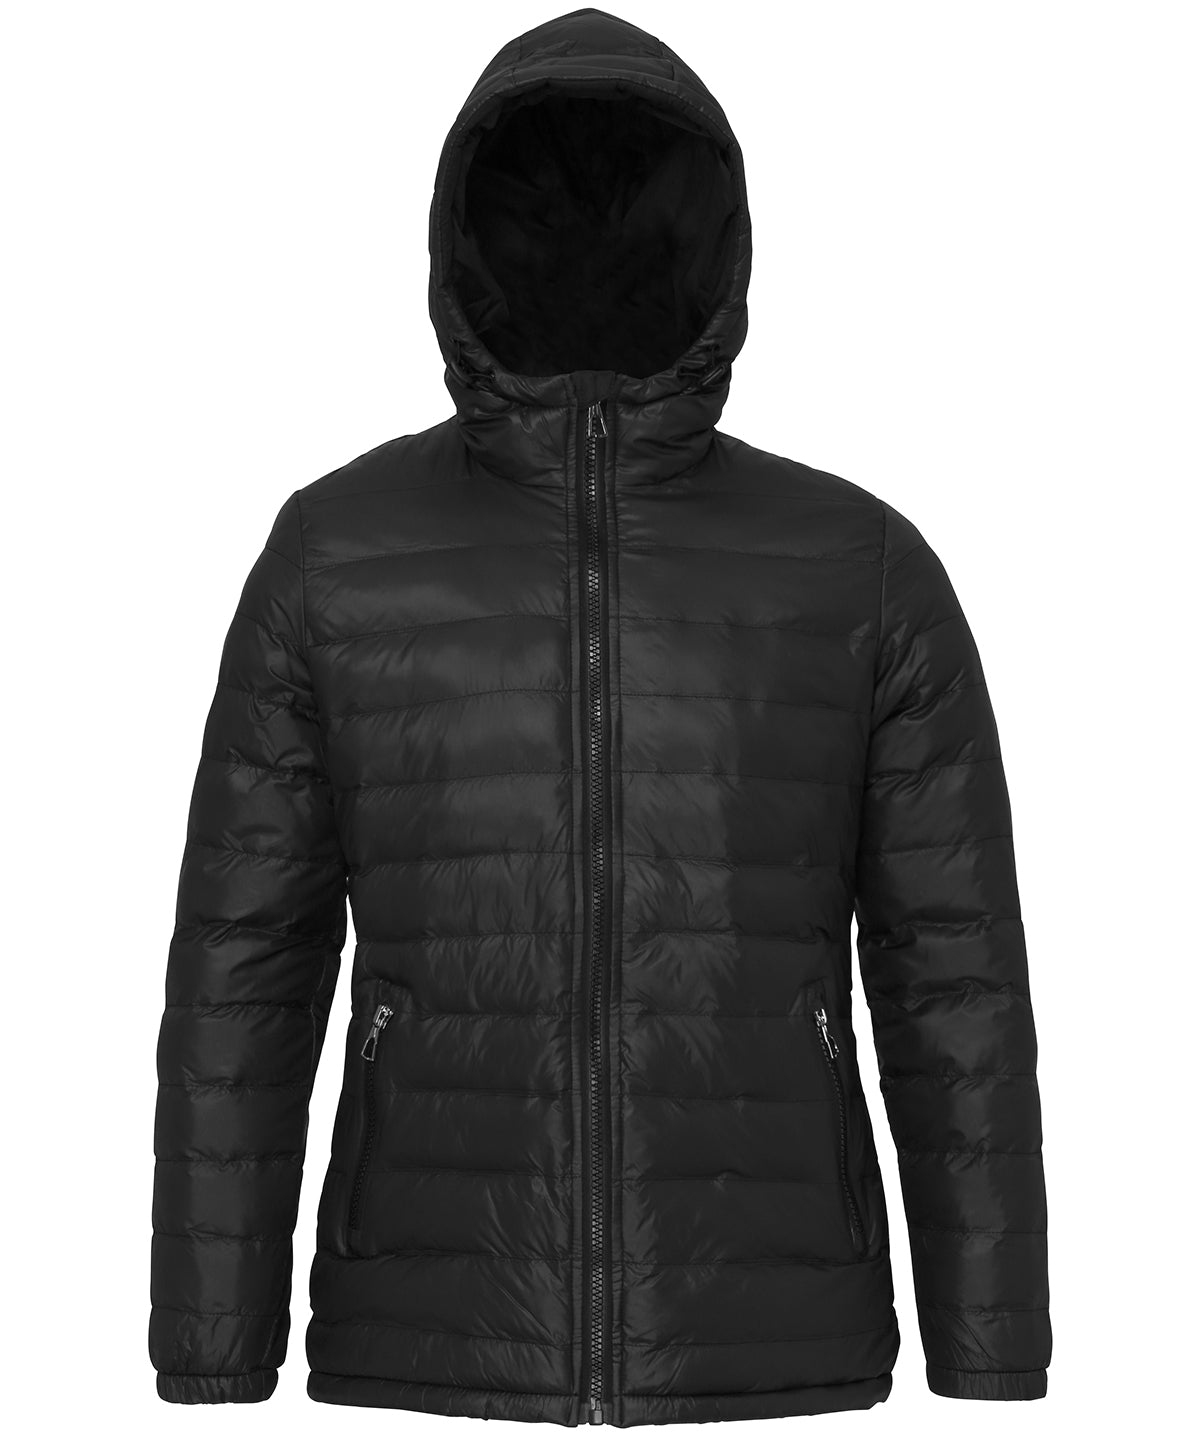 Personalised Jackets - Black 2786 Women's padded jacket